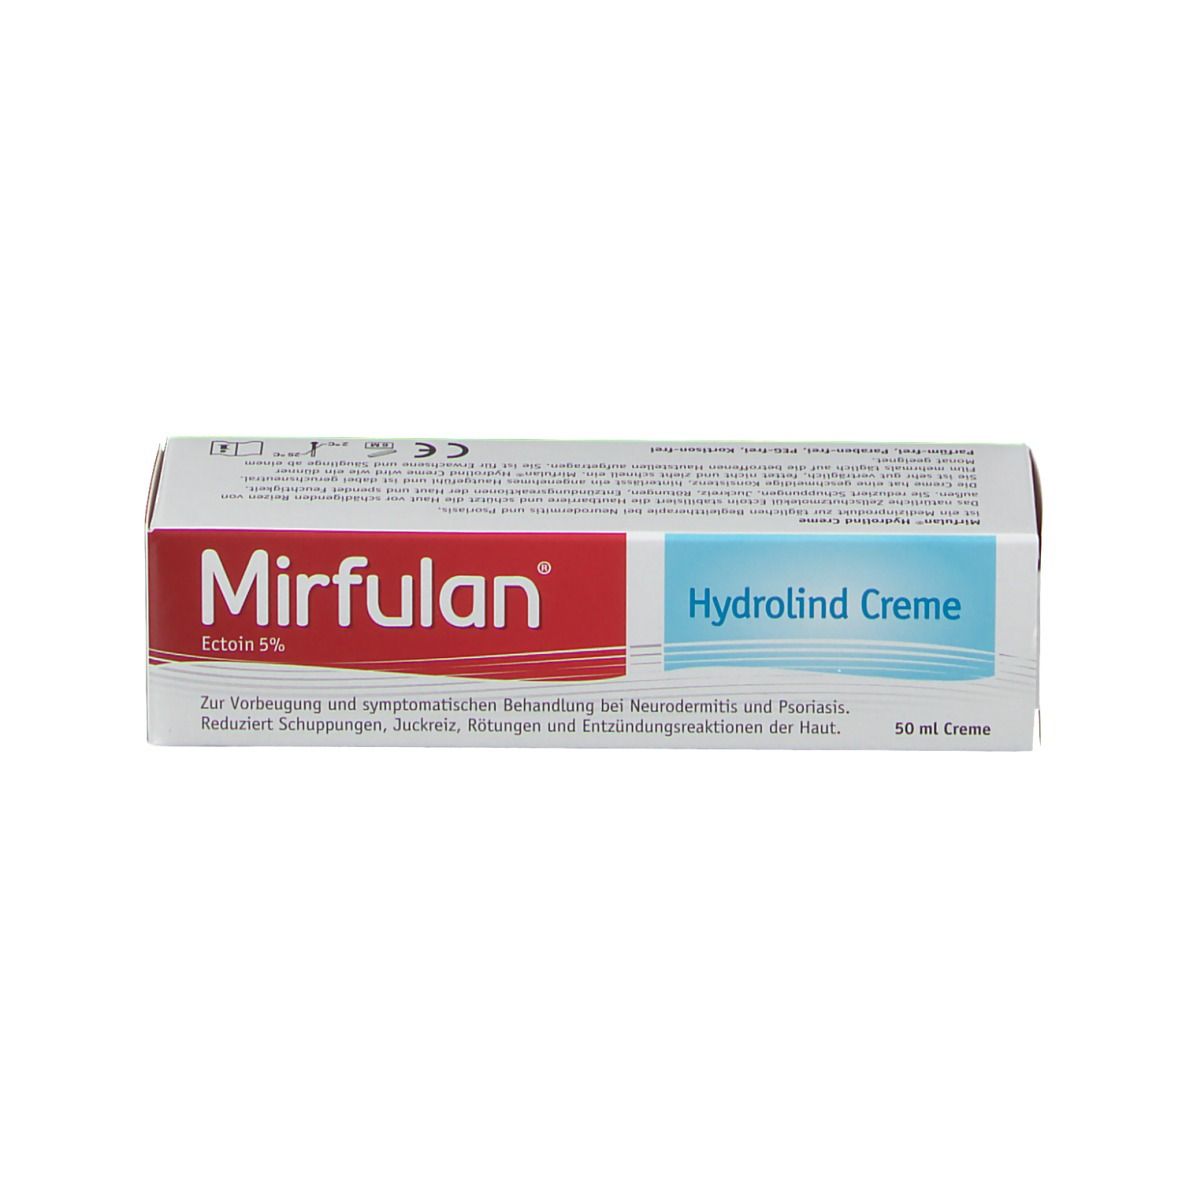 Mirfulan®  Hydrolind Creme